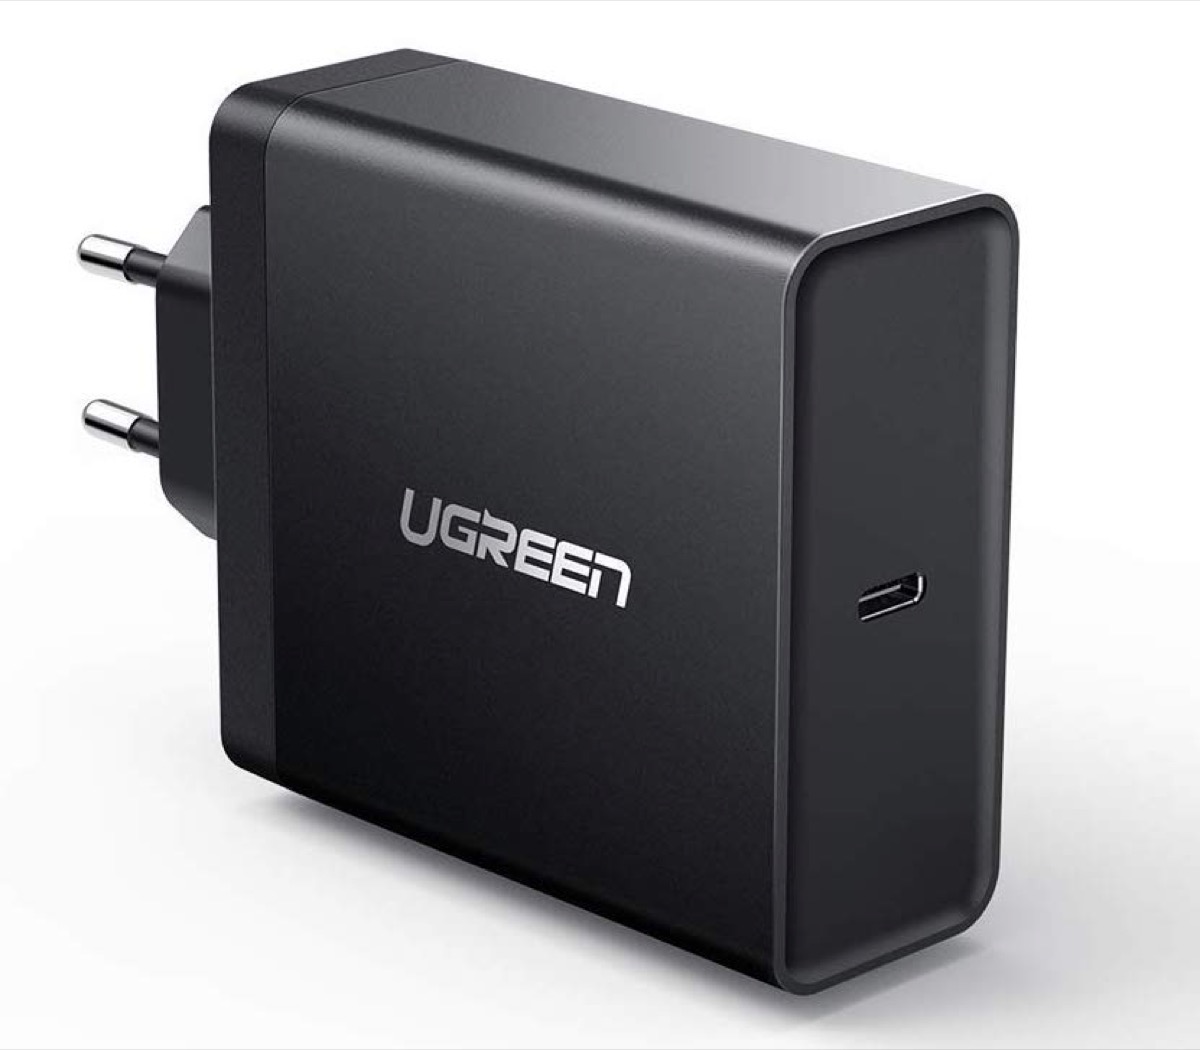 Caricatore USB-C da 65 W con Power Delivery in offerta a 23,99 euro